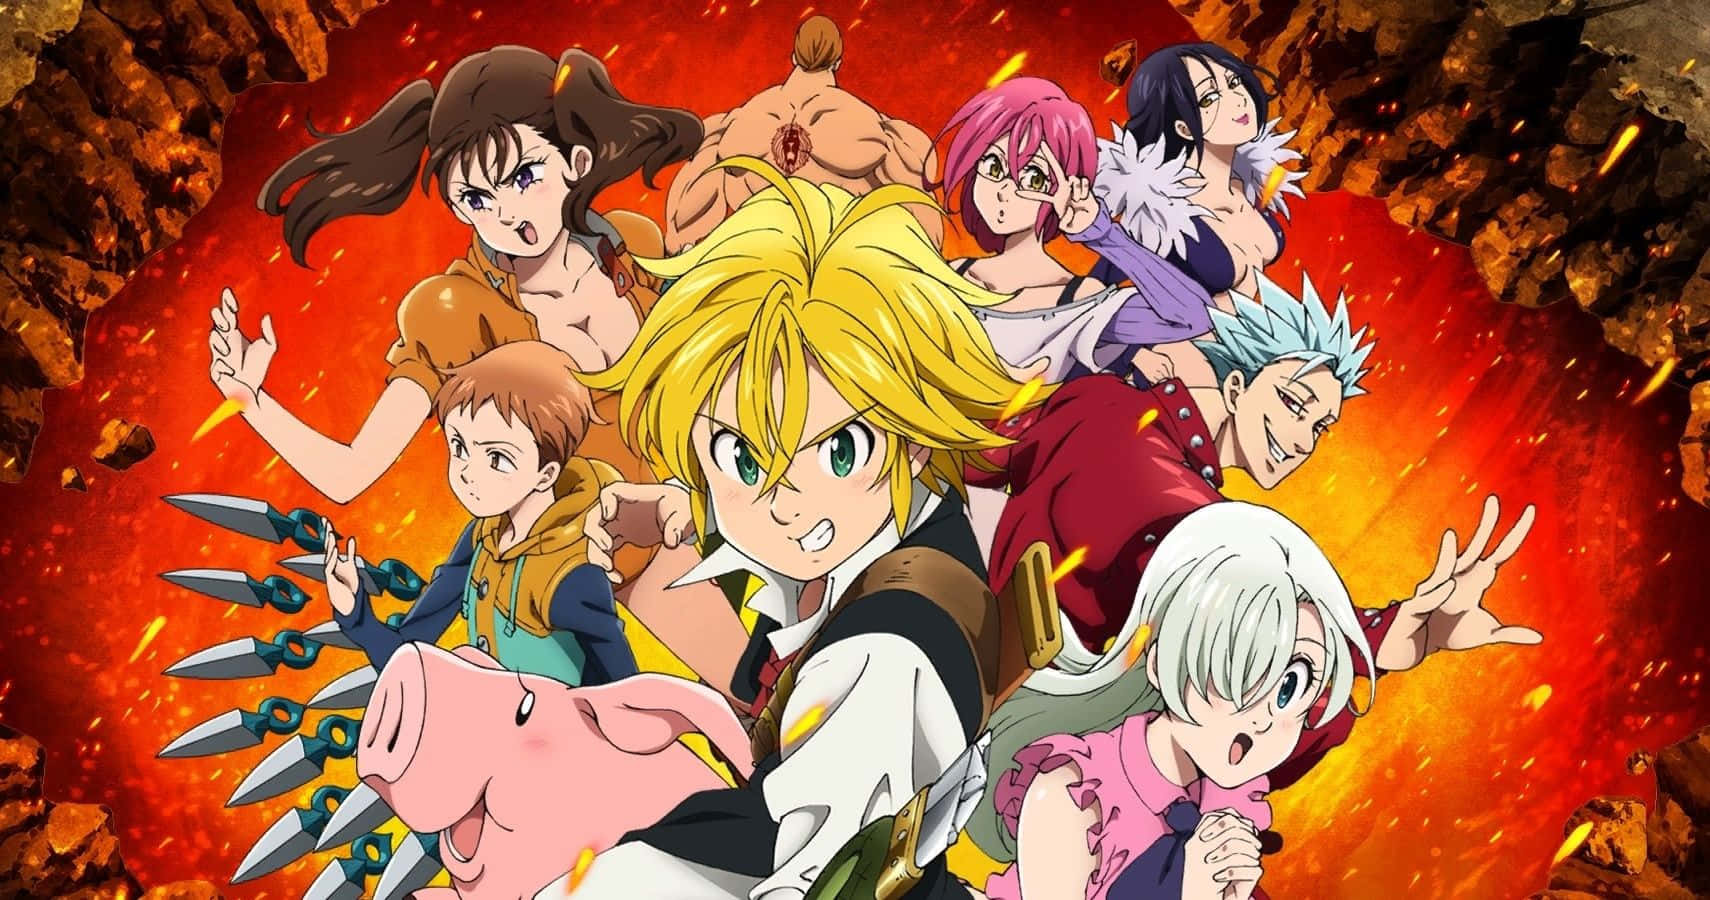 En gruppe af tegn foran et bål fra Fairy Tail Anime.